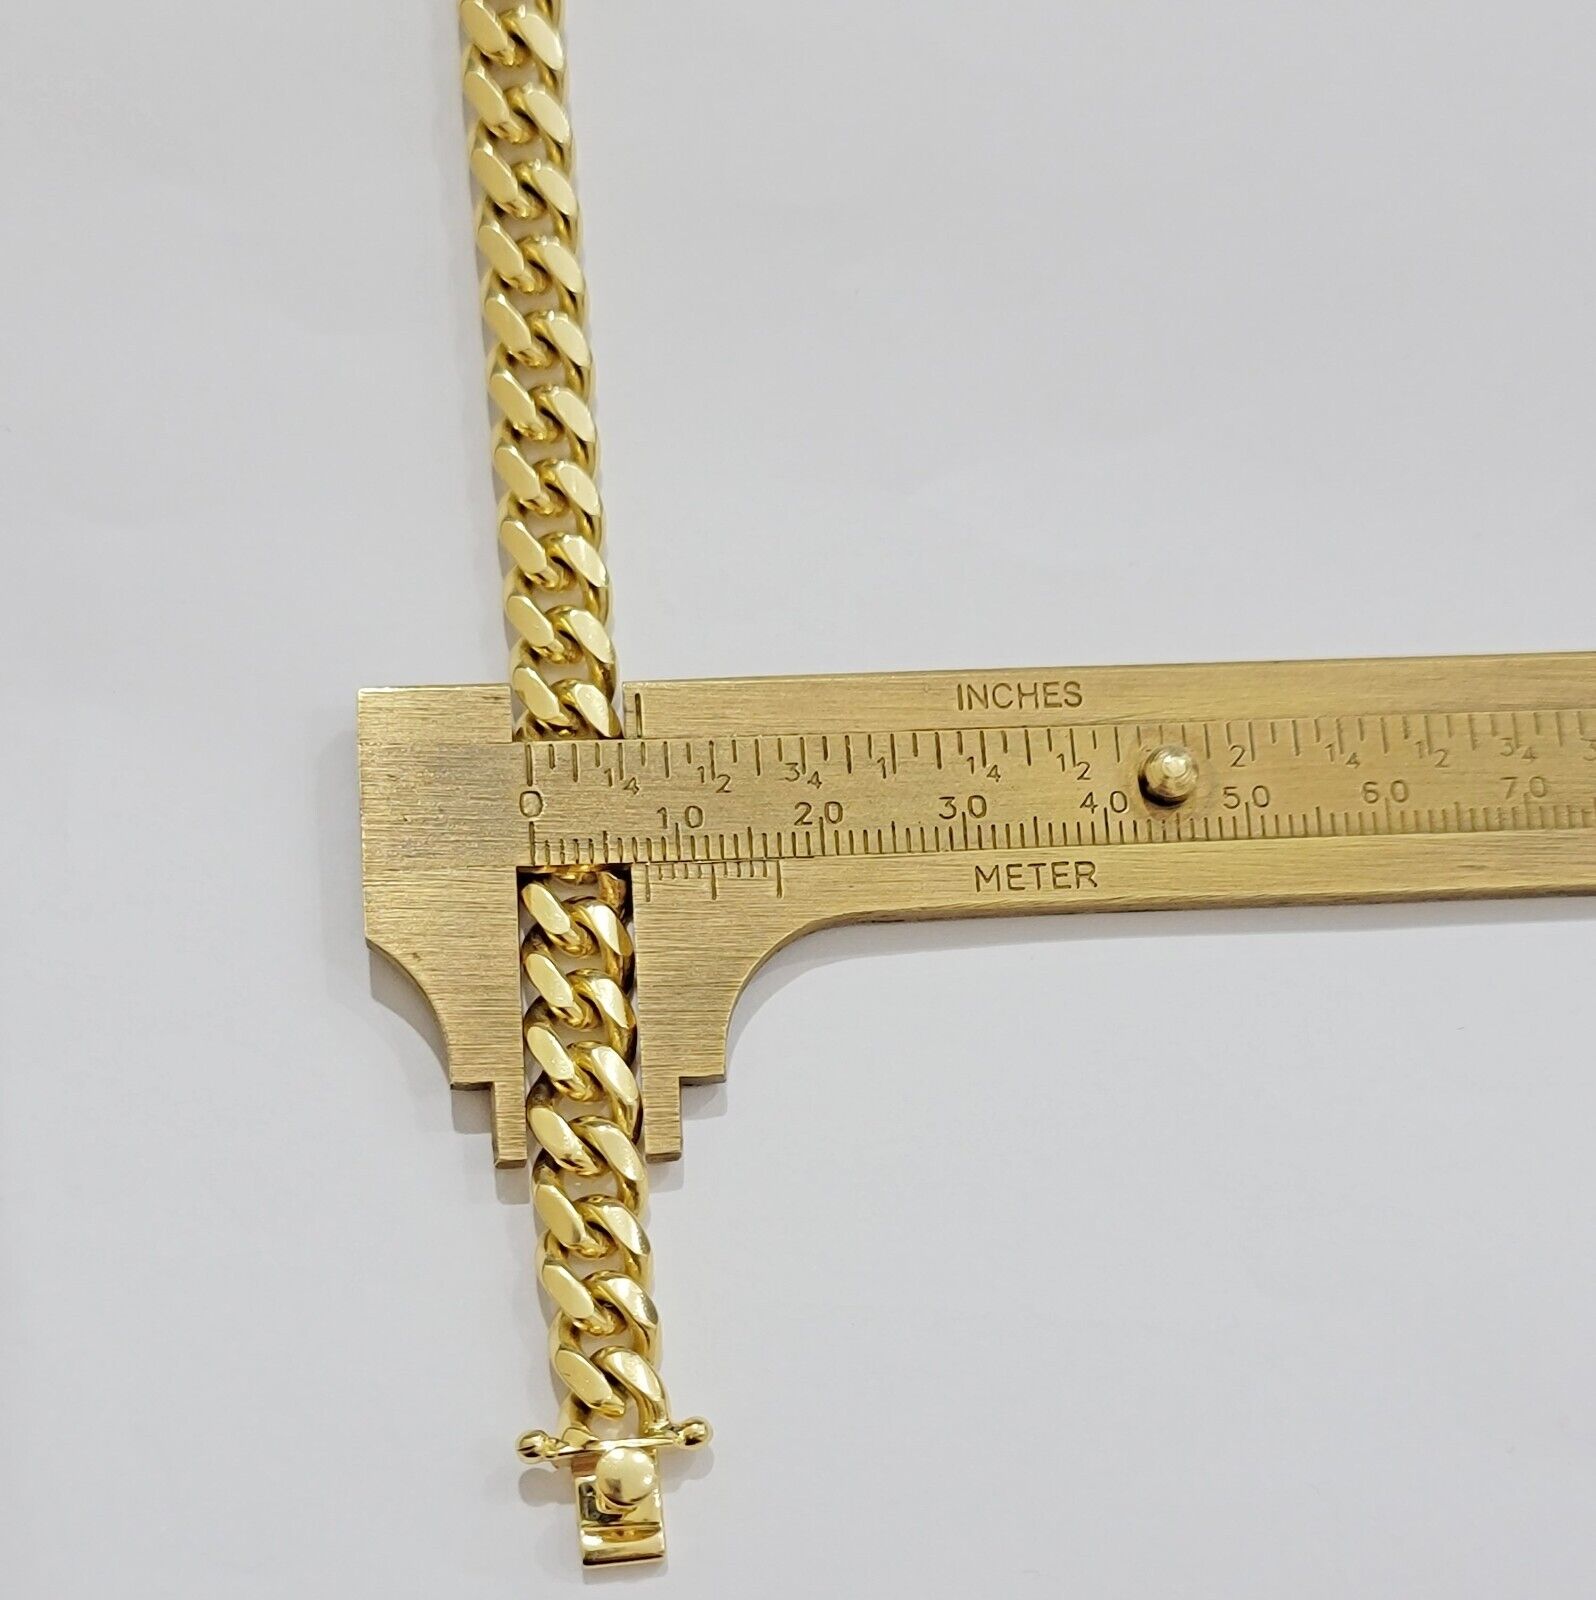 Solid 10k Gold Bracelet Cuban Link 8mm 7.5